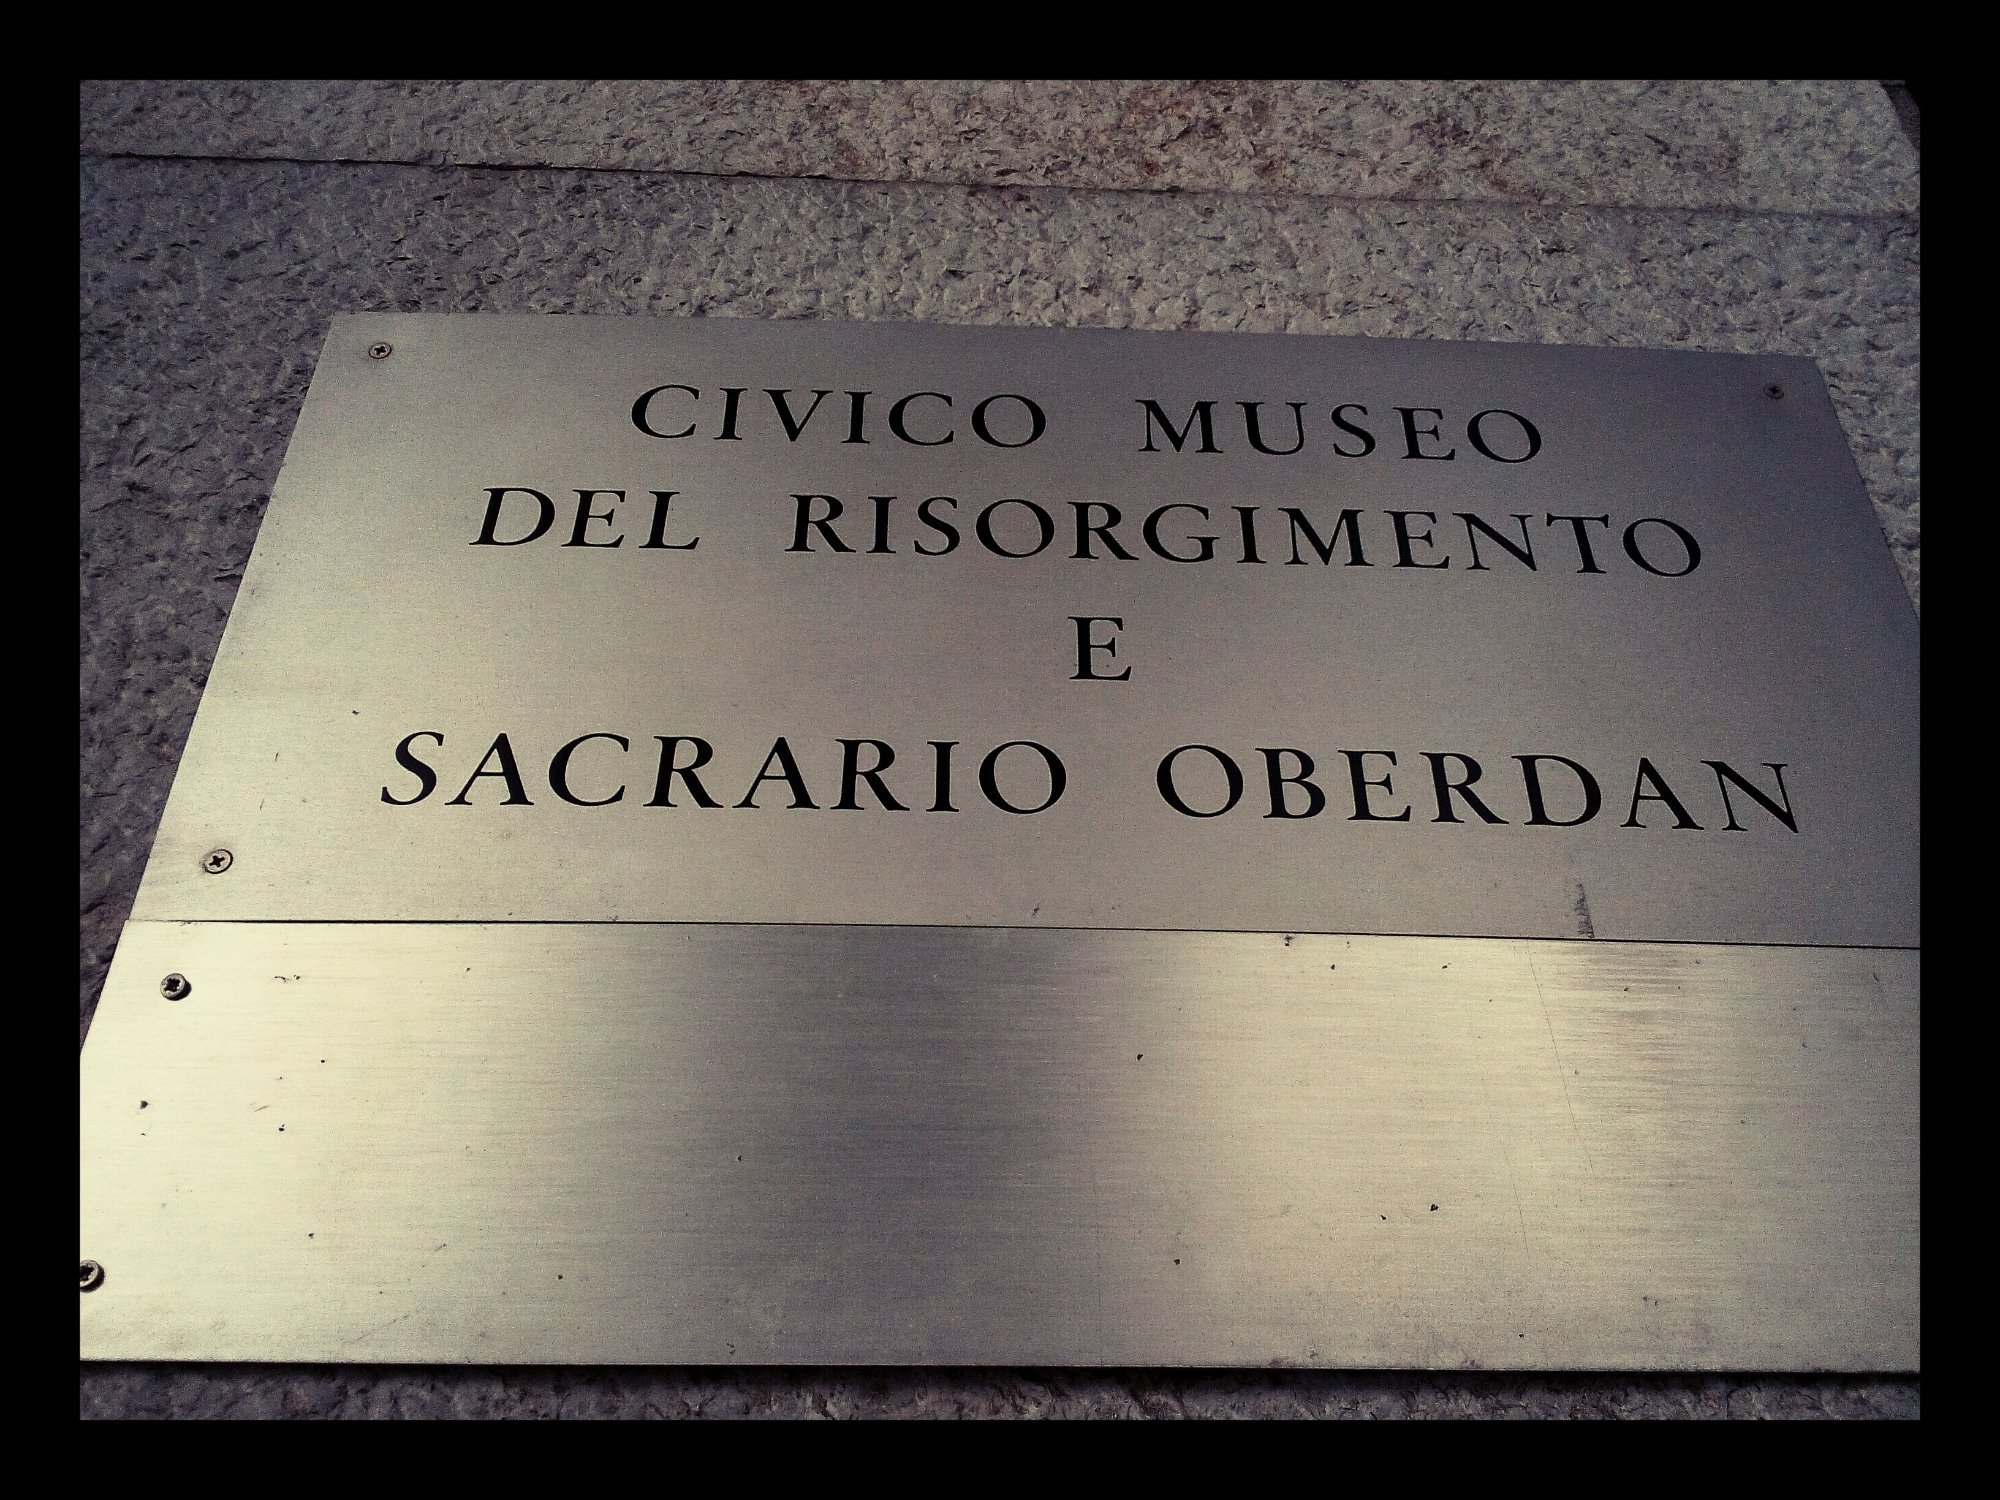 Museo del Risorgimento e Sacrario Oberdan